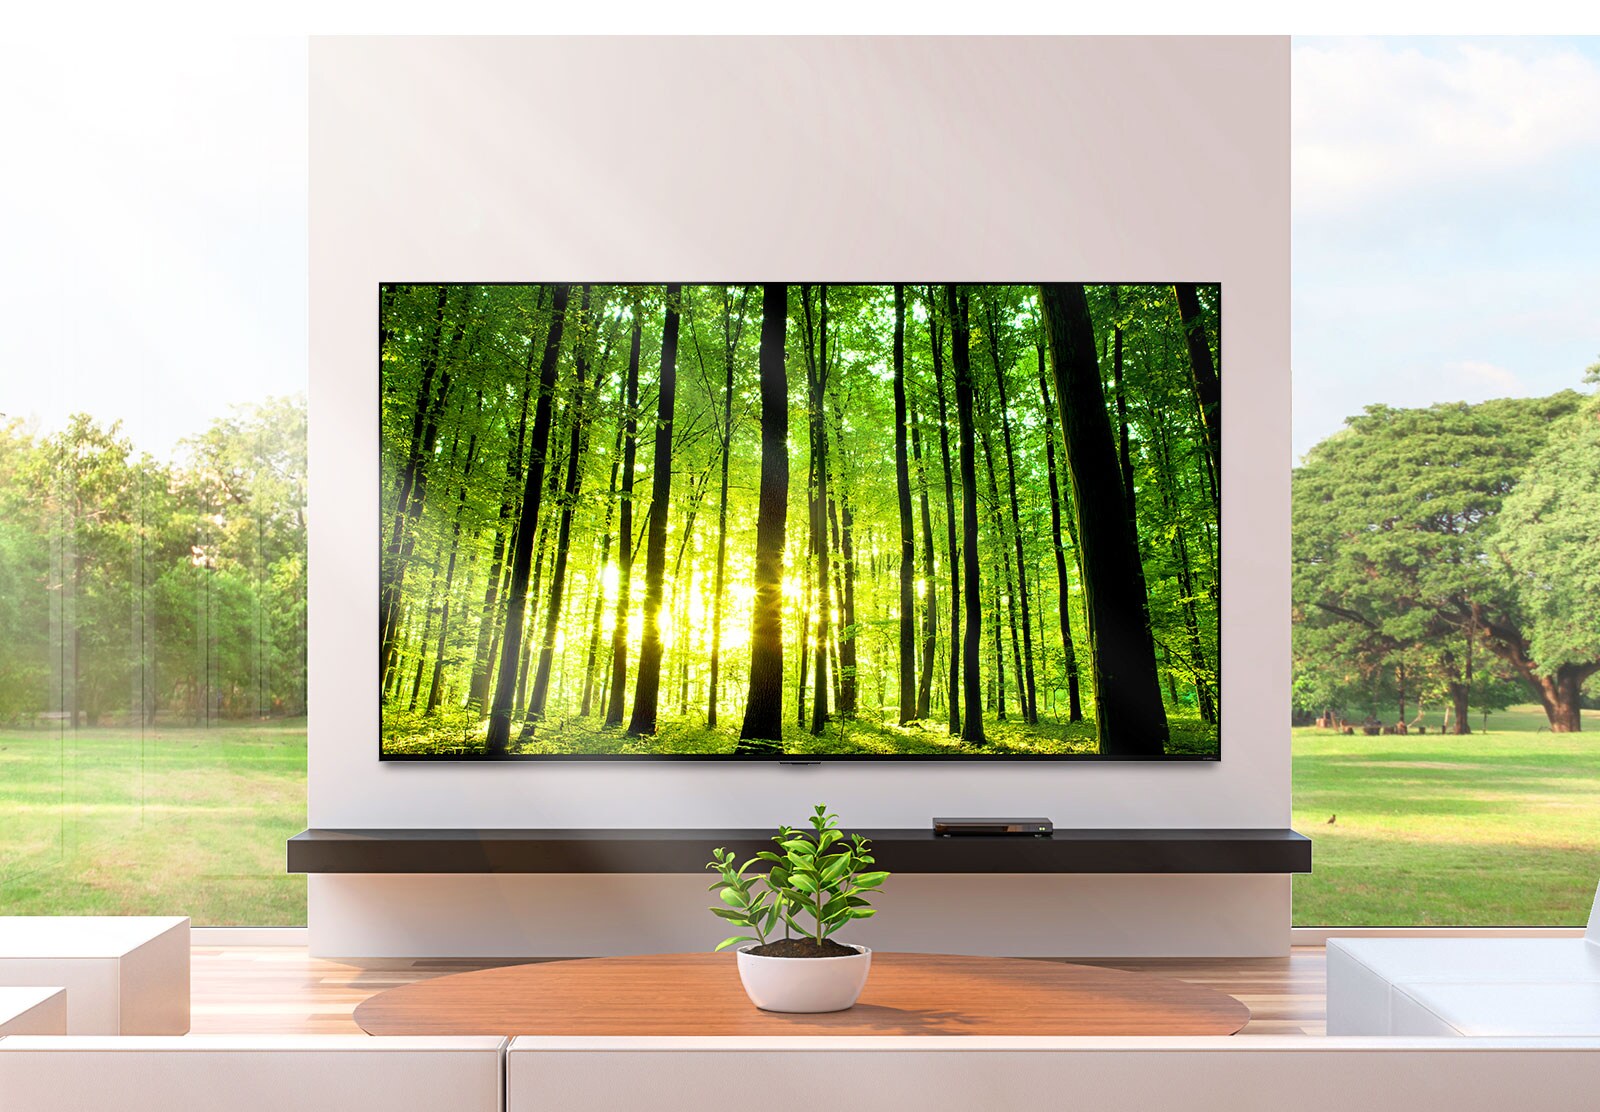 تلفزيون بشاشة مسطحة كبيرة مثبت على الجدار أمام نوافذ ممتدة من الأرض حتى السقف. نبتة صغيرة موضوعة على طاولة القهوة أمام التلفزيون.